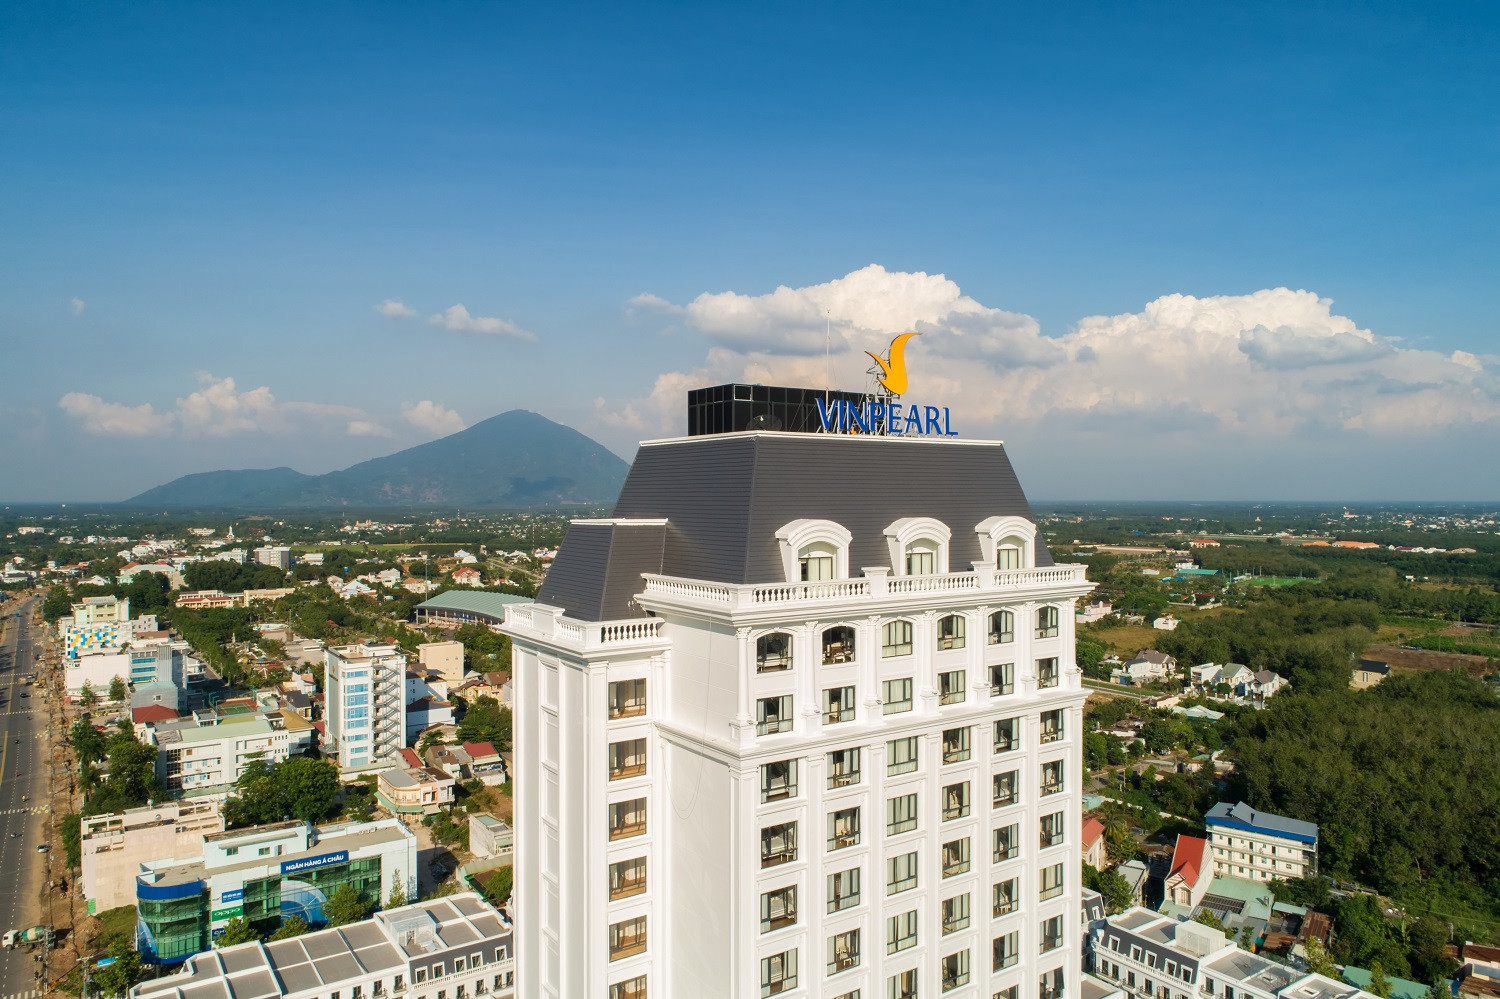 Vinpearl Hotel Tây Ninh hứa hẹn trở thành biểu tượng của sự phát triển hội nhập và đổi mới của thành phố.